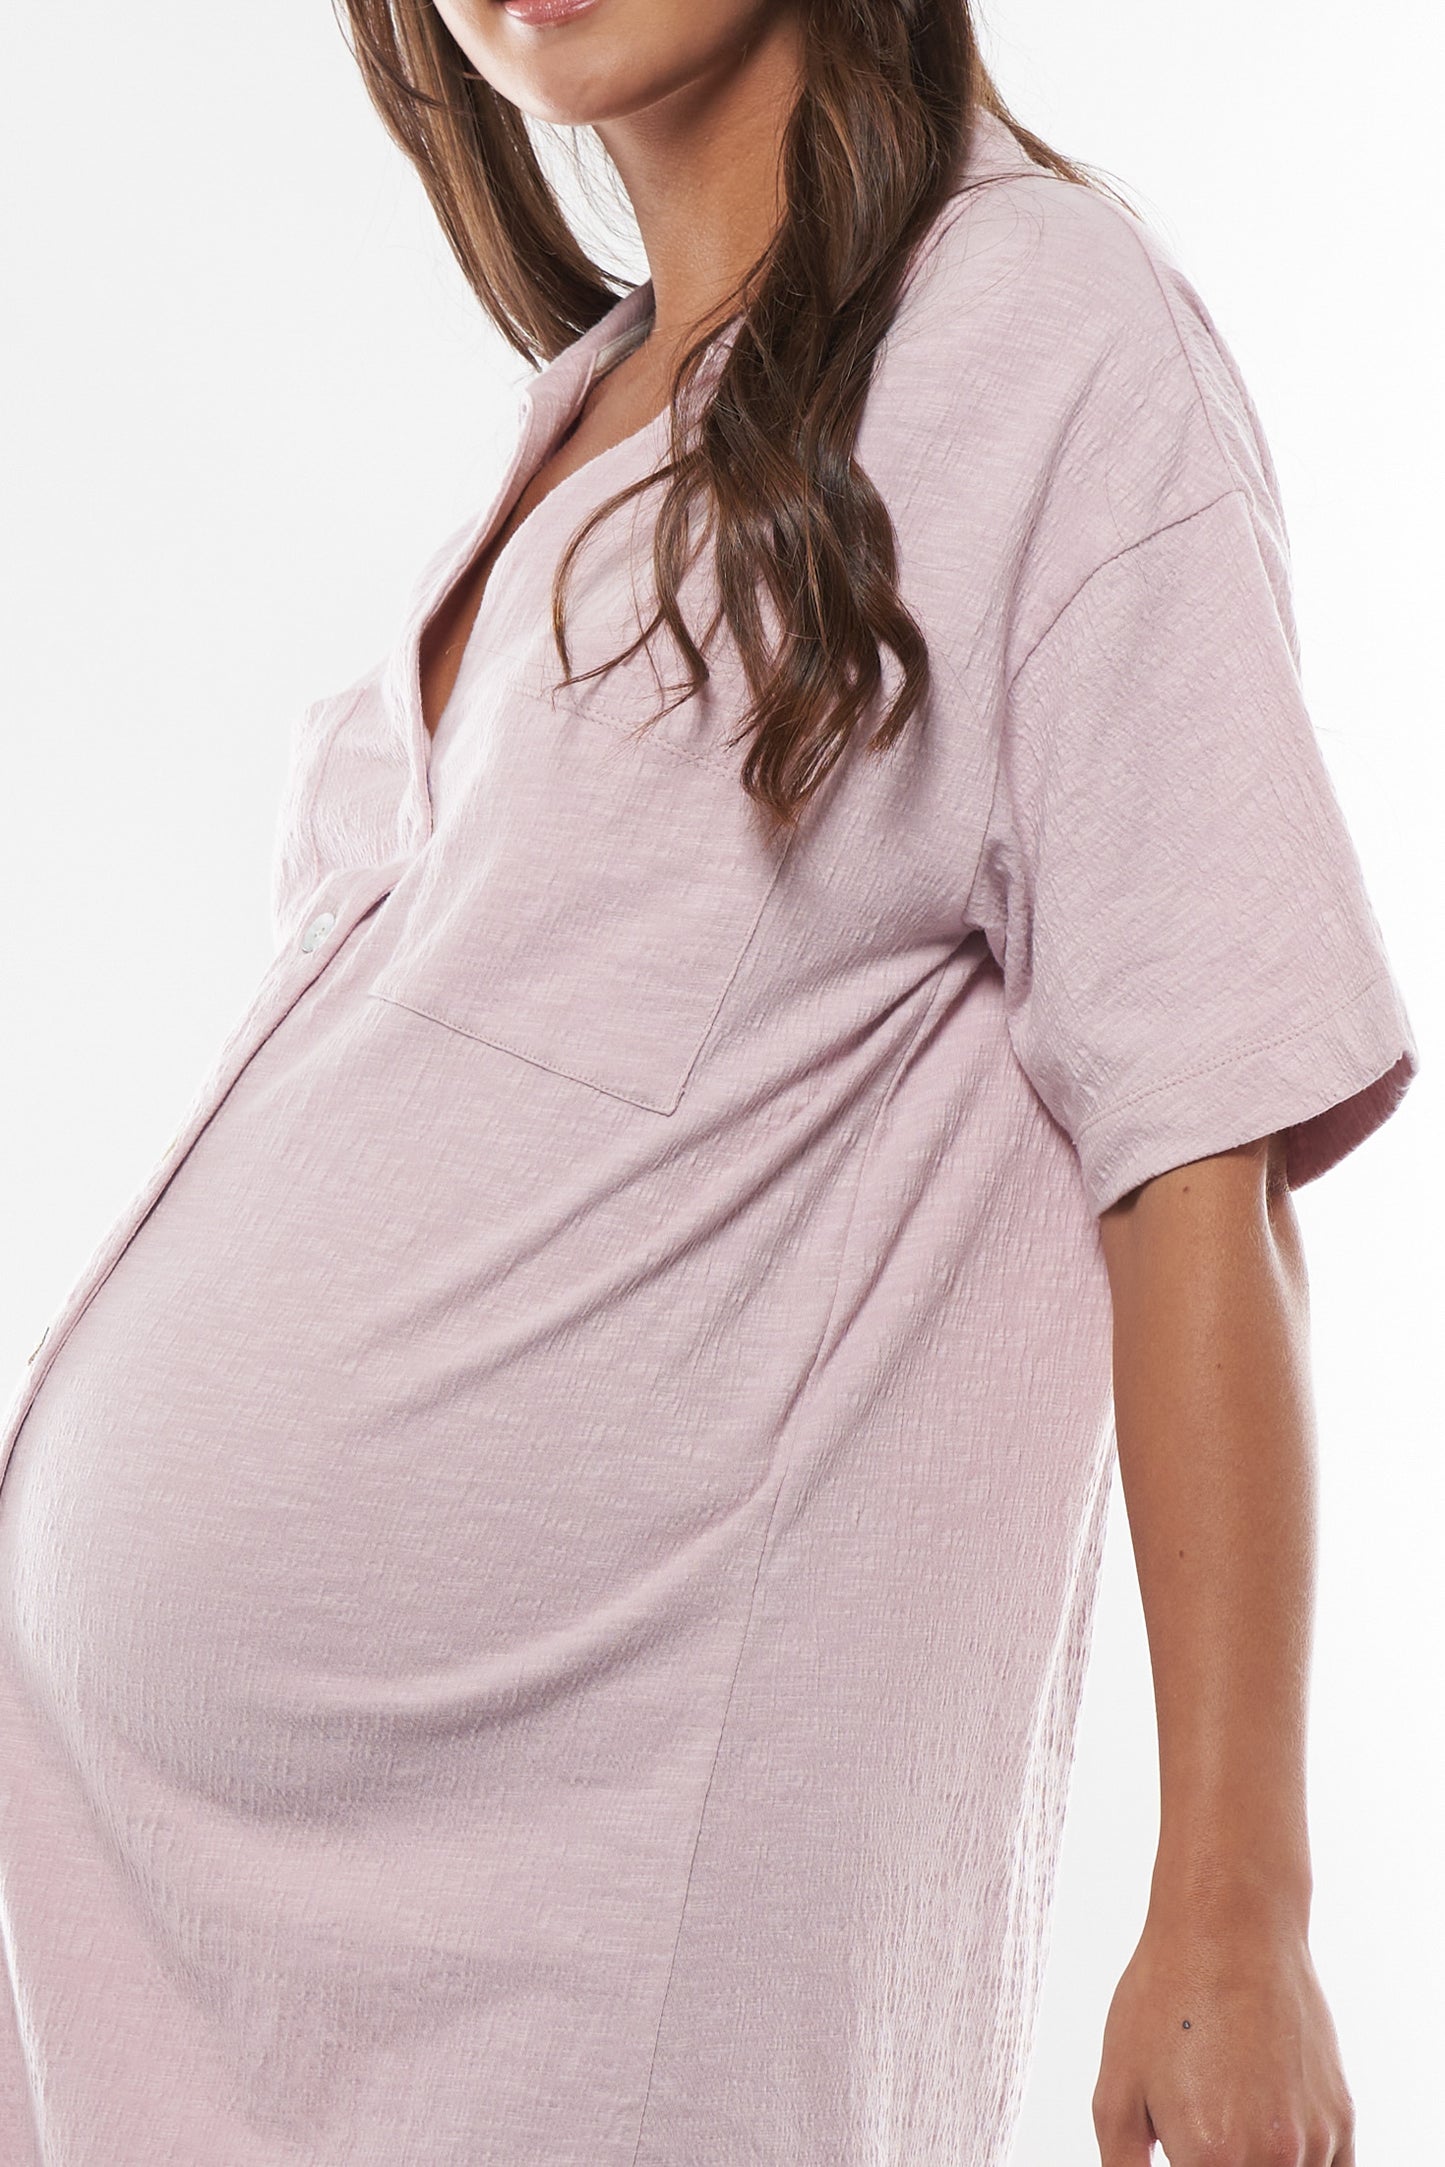 Maternity Sleepwear -2